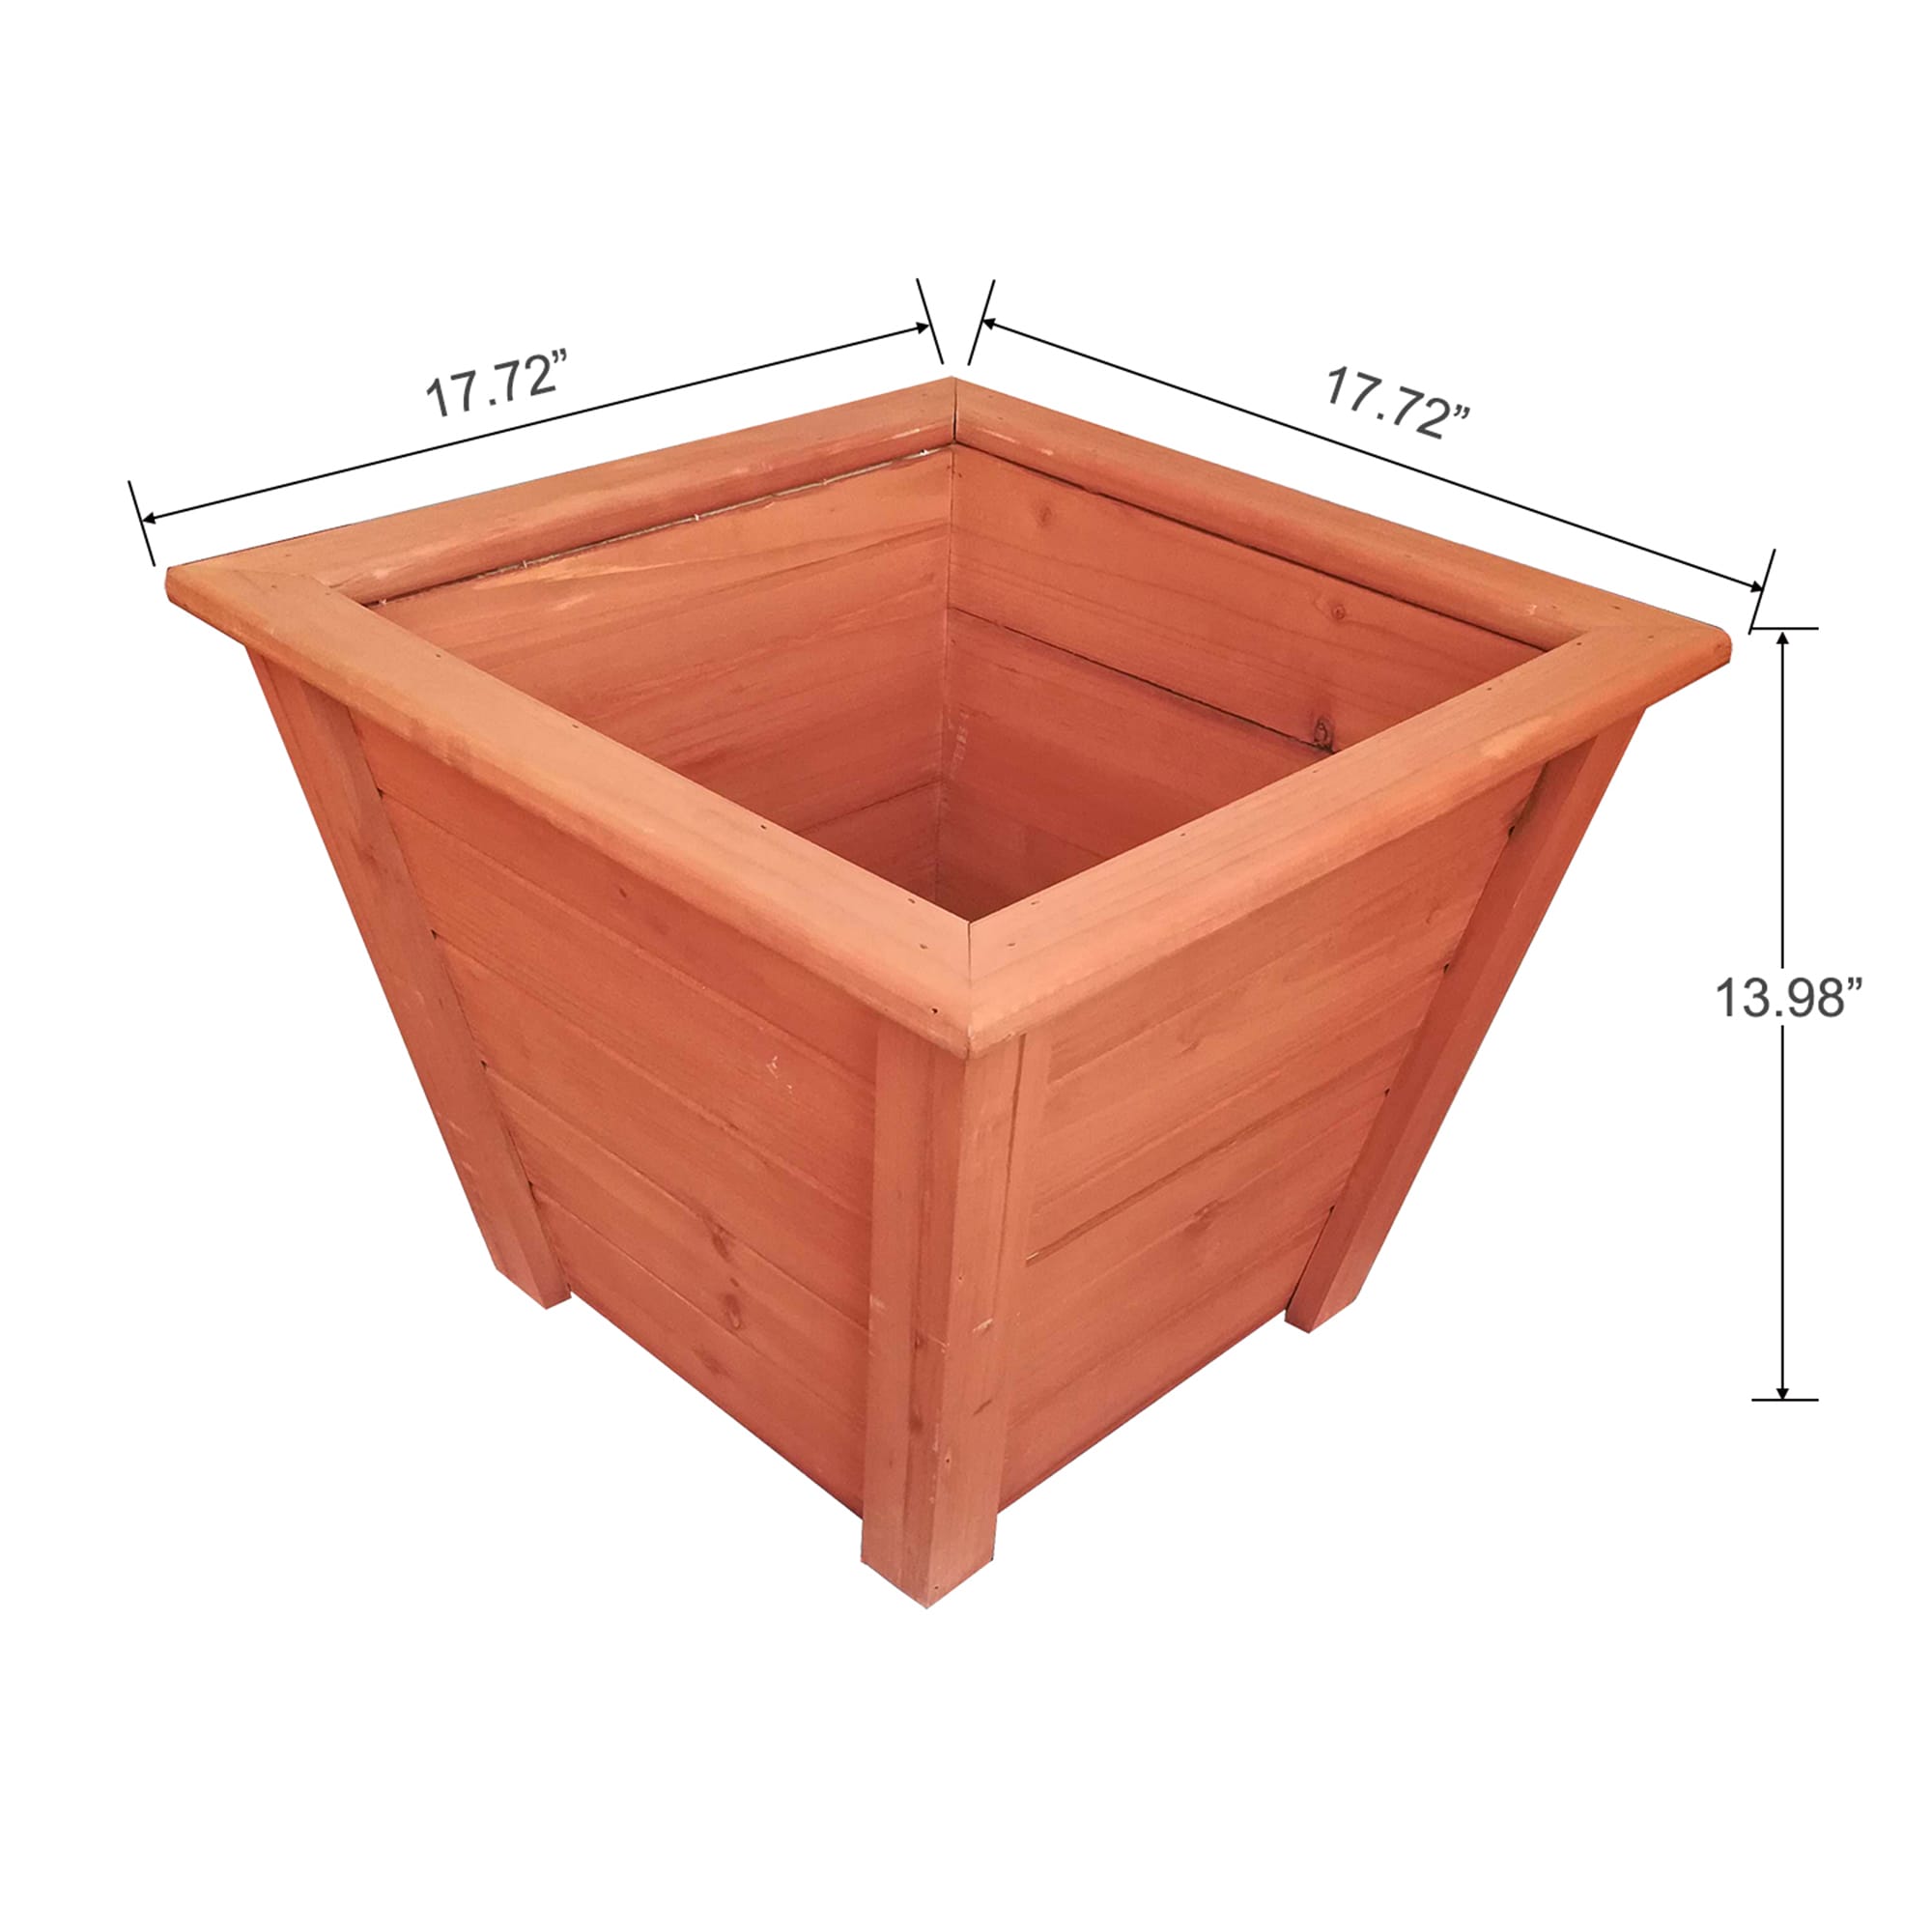 Crate & Barrel Slate Blue Quarter Sheet Cooling Rack + Reviews